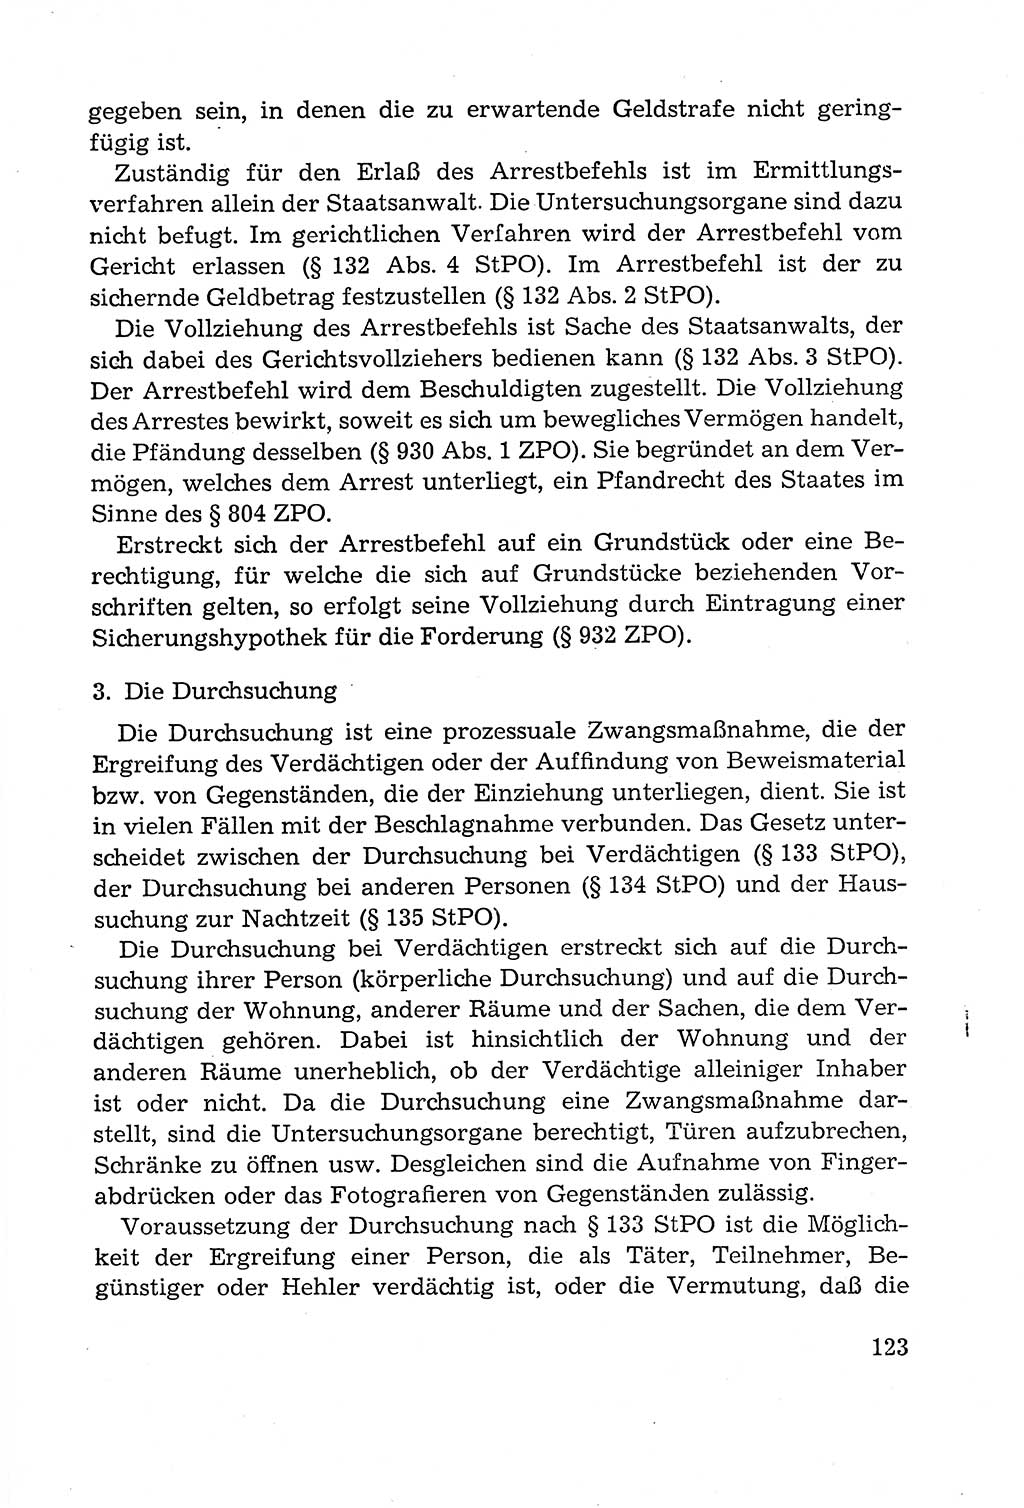 Leitfaden des Strafprozeßrechts der Deutschen Demokratischen Republik (DDR) 1959, Seite 123 (LF StPR DDR 1959, S. 123)